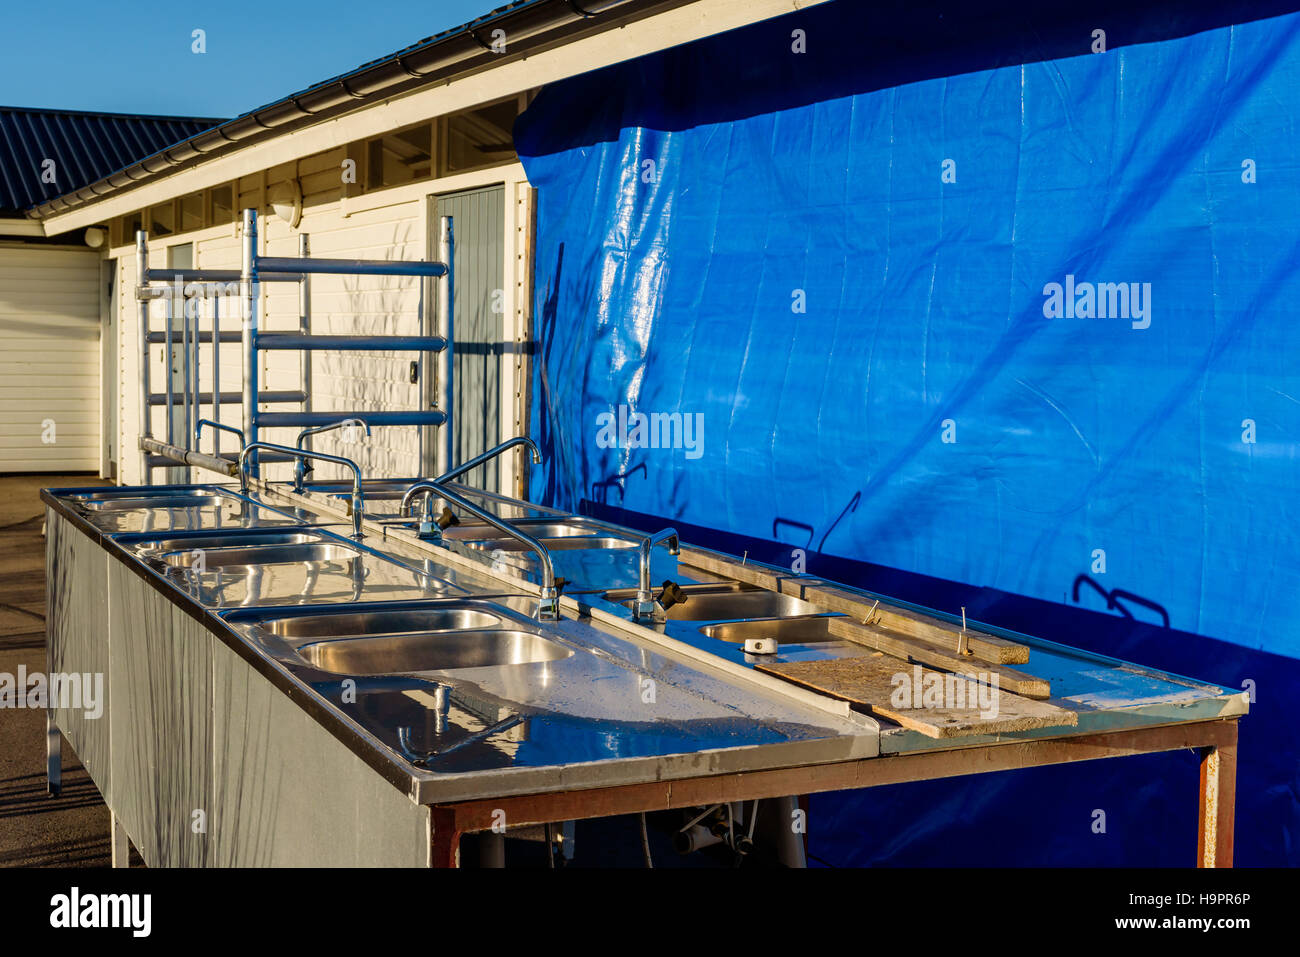 Alte Küchenspüle außerhalb einer öffentlichen Toilette, die renoviert wird. Blaue Plane Abdeckung Teil des Gebäudes. Stockfoto